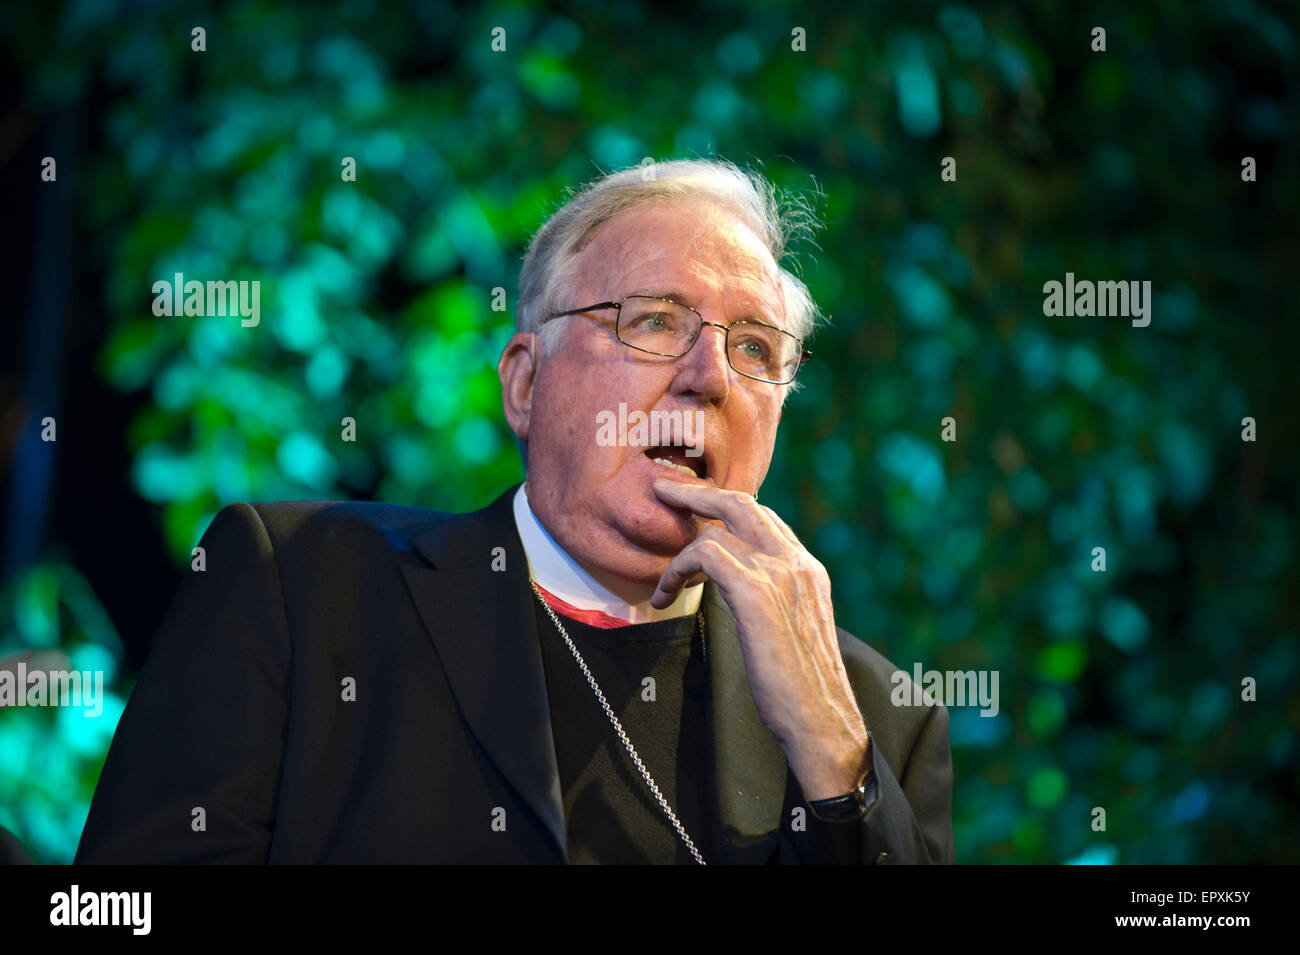 Le cardinal Cormac Murphy-O'Connor s'exprimant sur scène à Hay Festival 2015 Banque D'Images